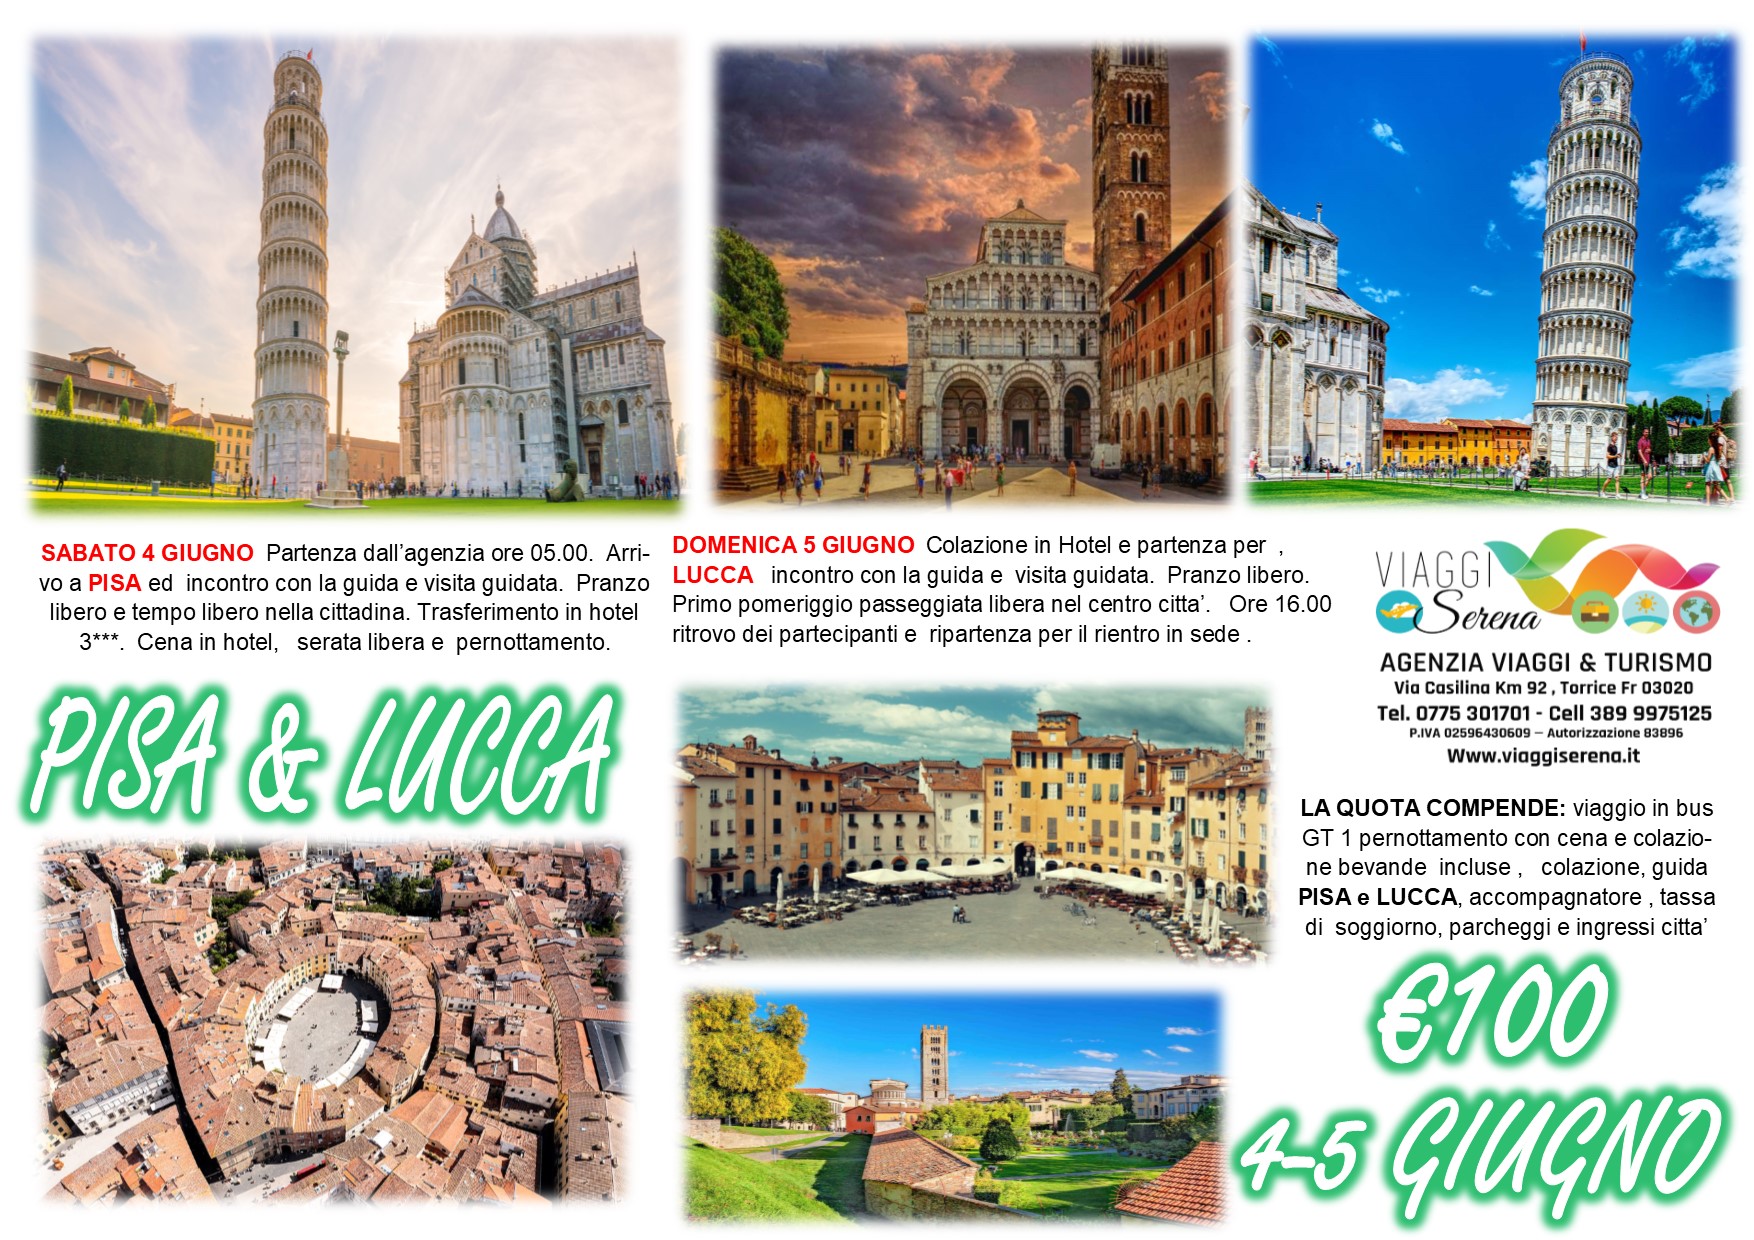 Viaggi di Gruppo: Pisa & Lucca 4-5 Giugno € 100,00